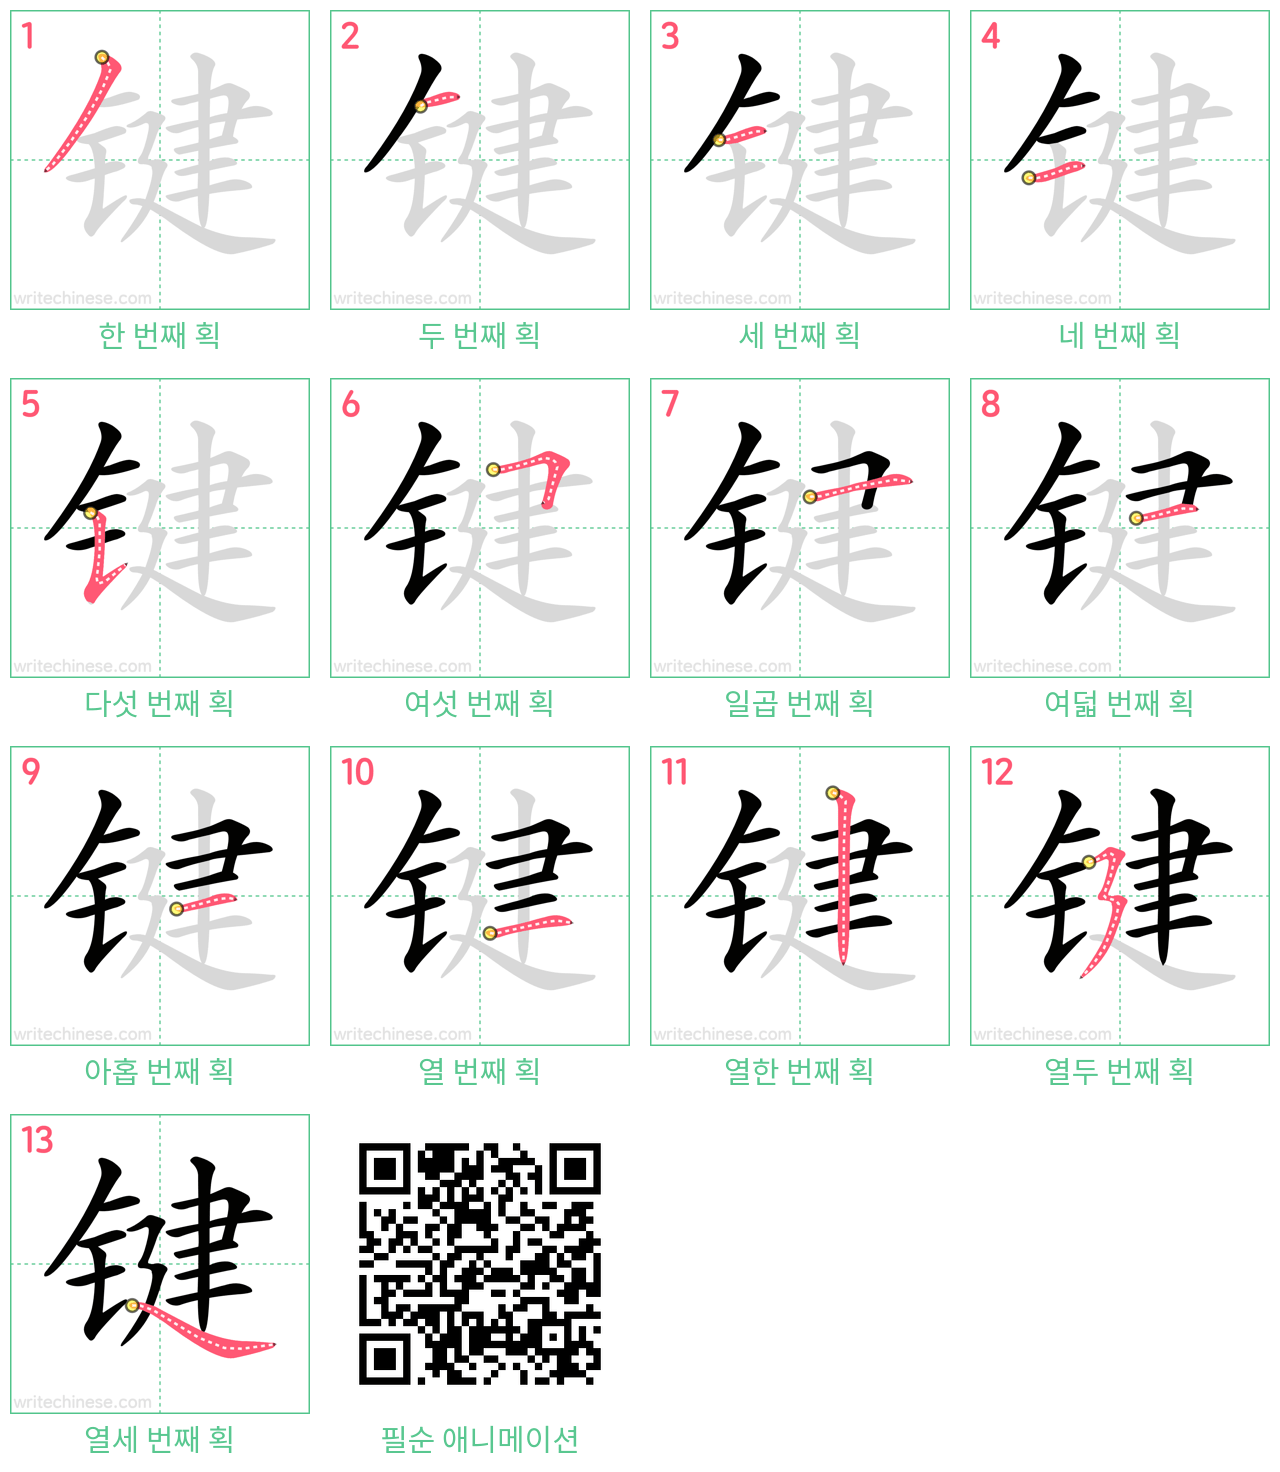 键 step-by-step stroke order diagrams